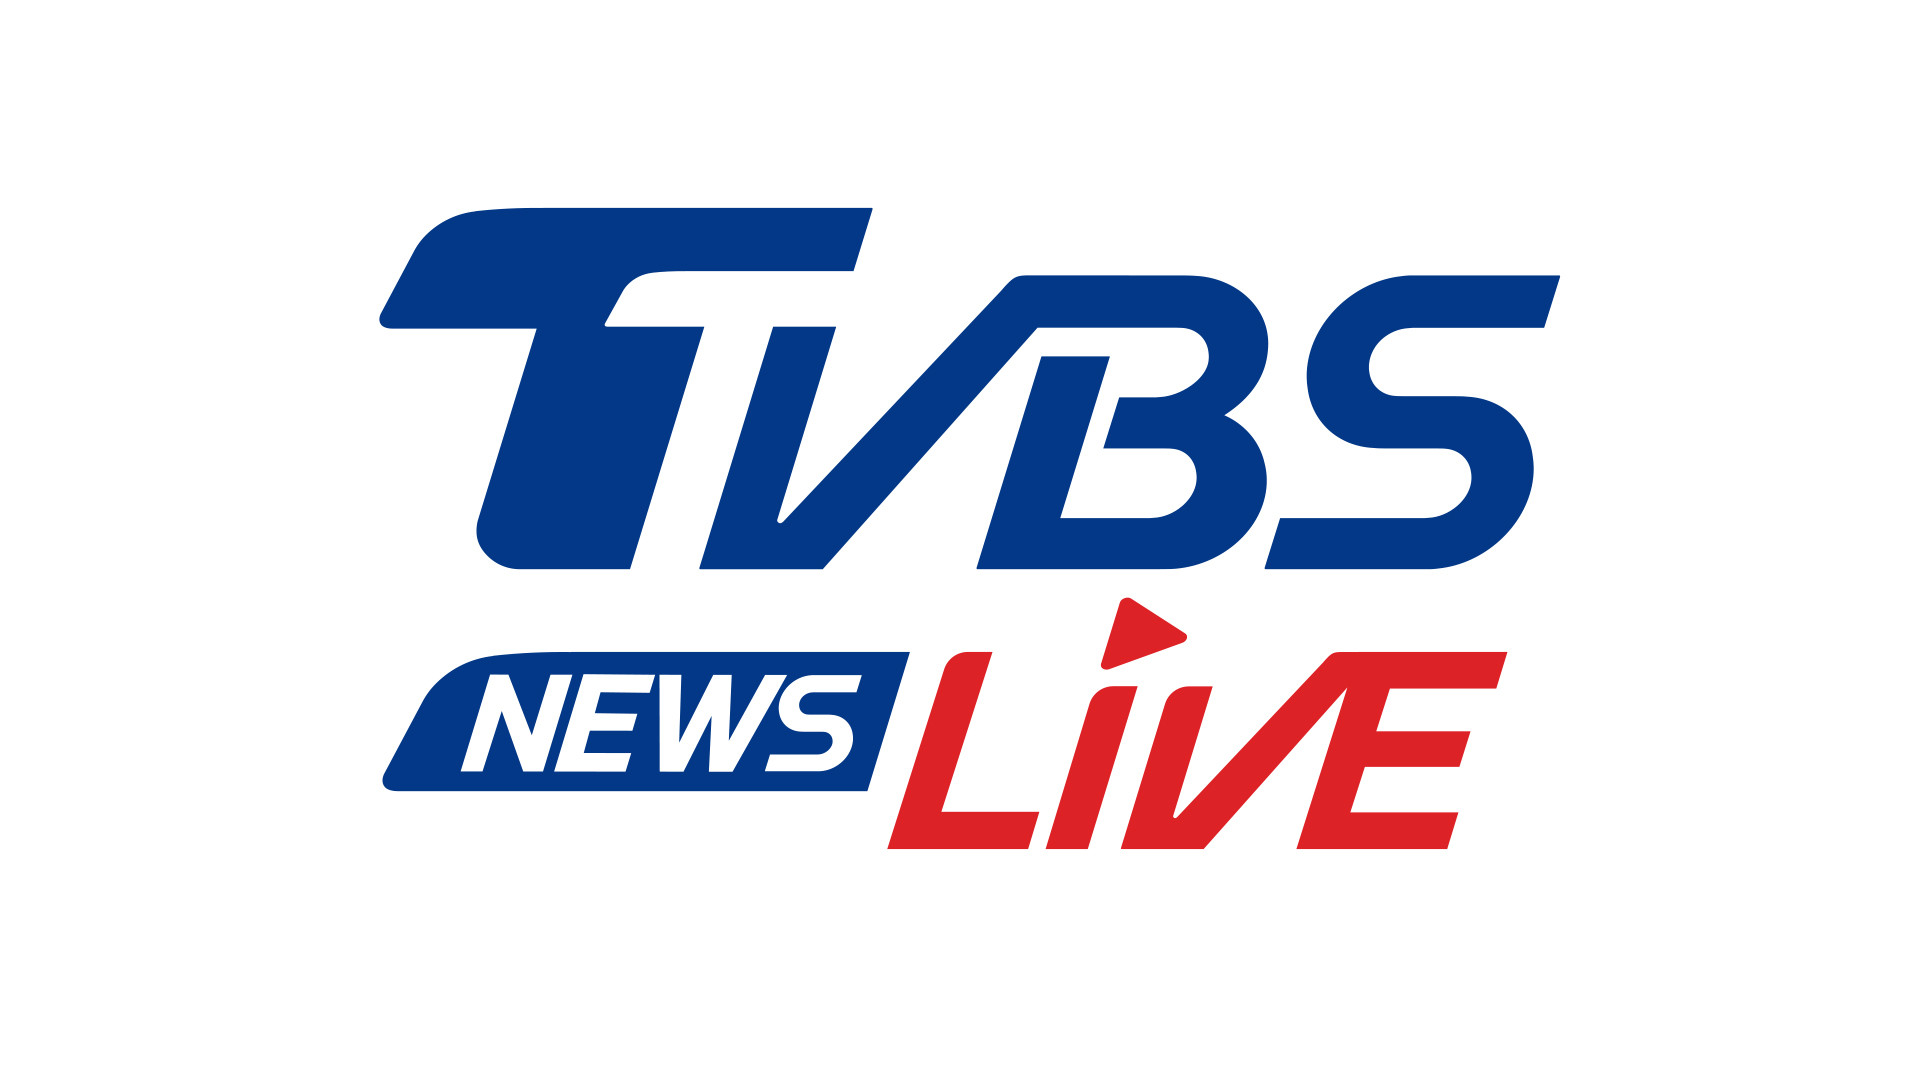 TVBS news live